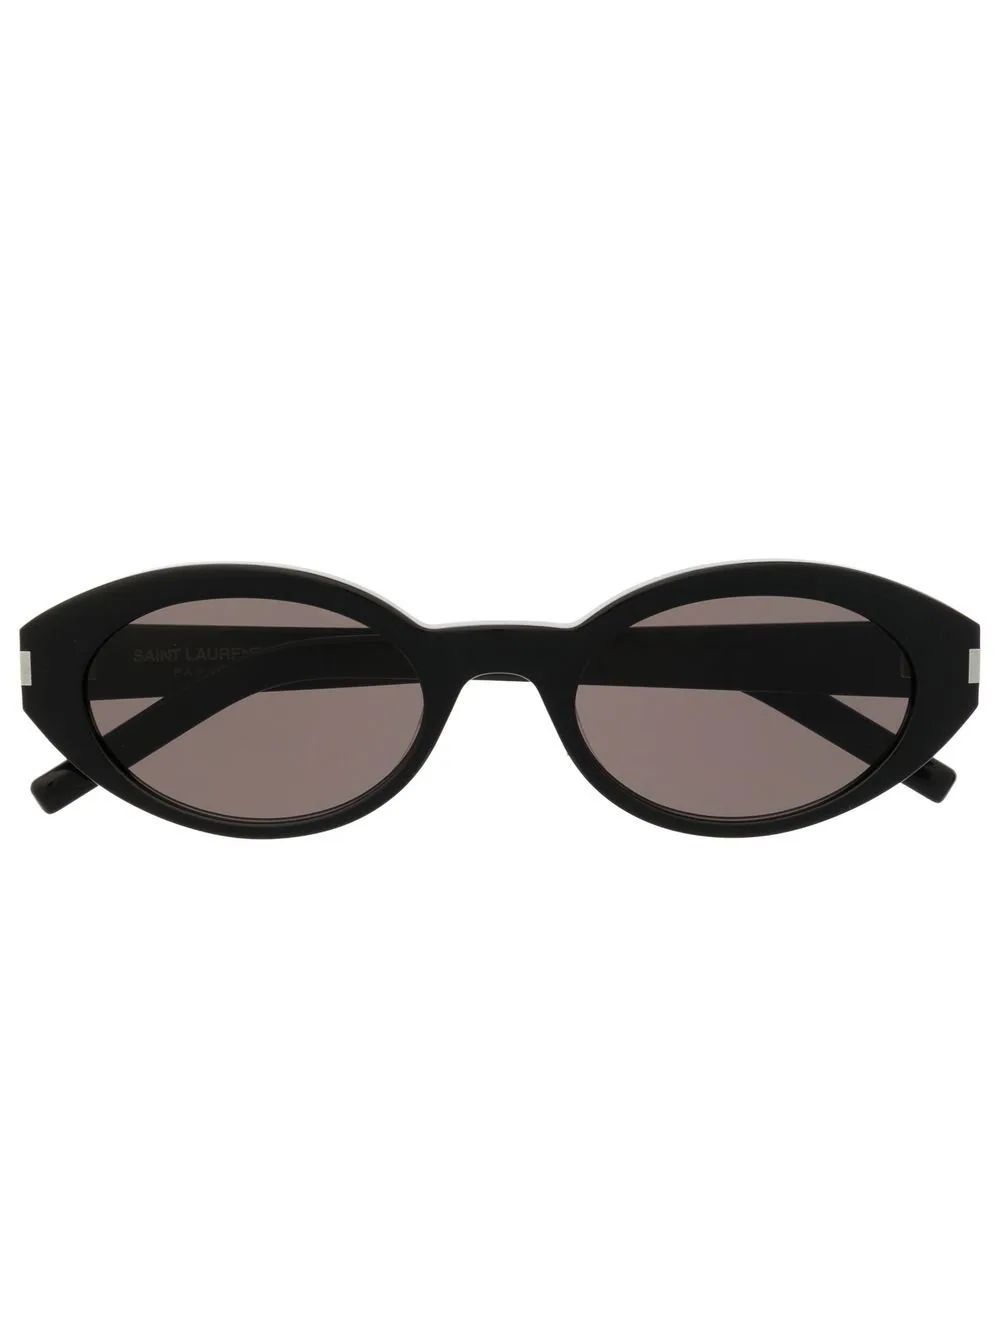 Saint Laurent Eyewear Oval Frame Sunglasses - Farfetch | Farfetch Global